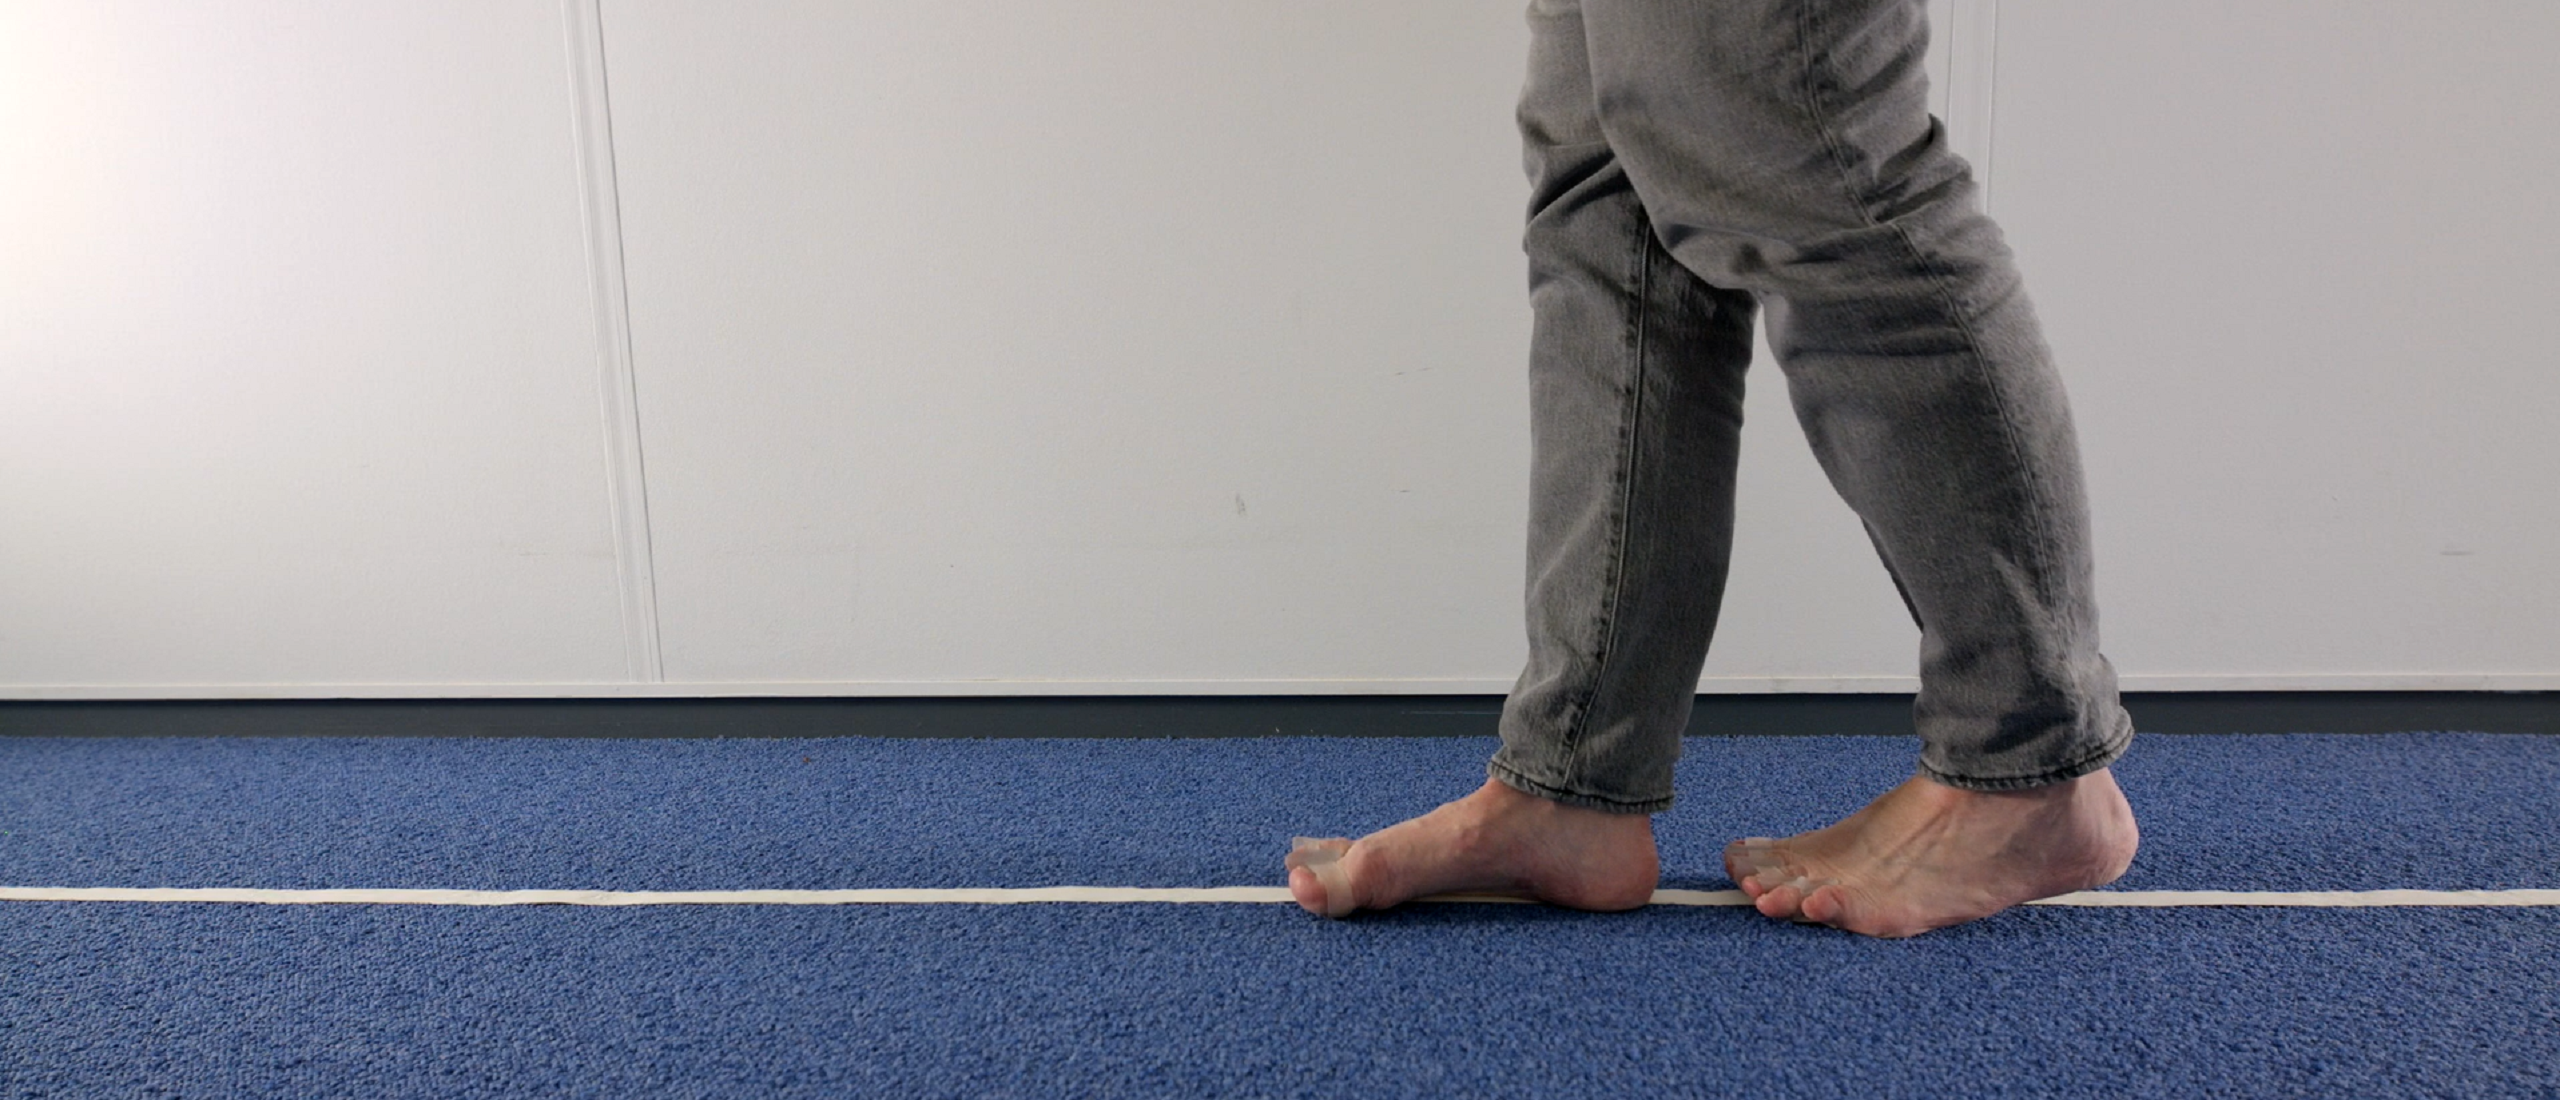 Voetoefening 24 voor lopen op blote voeten tijdens Bevrijd je voetendag